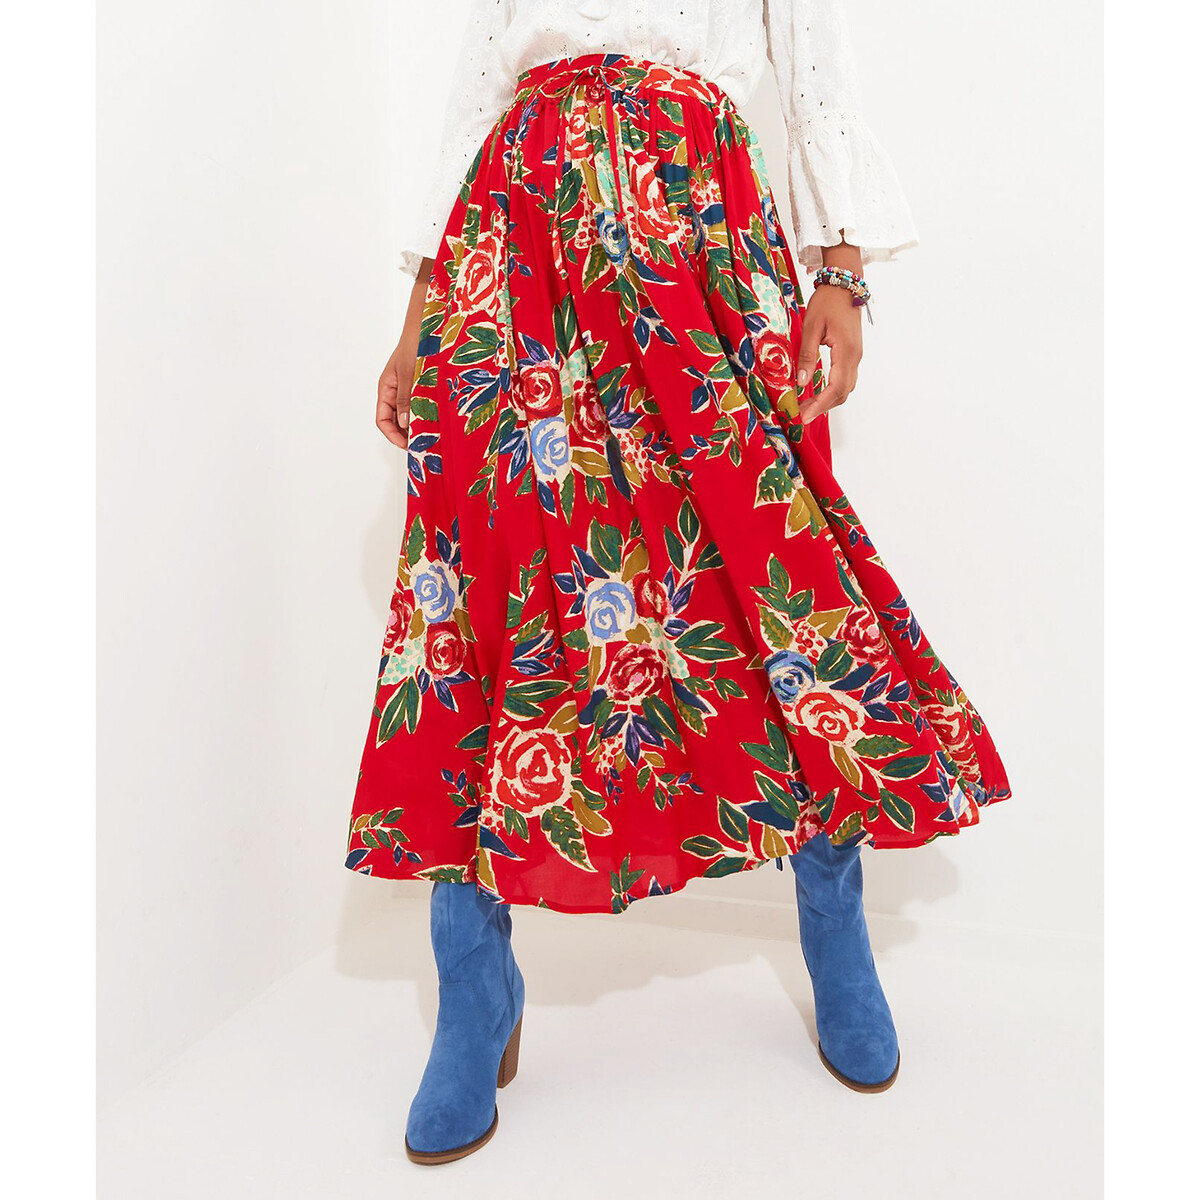 Юбка длинная с цветочным рисунком 42 (FR) - 48 (RUS) красный юбка длинная асимметричная с принтом 42 fr 48 rus синий